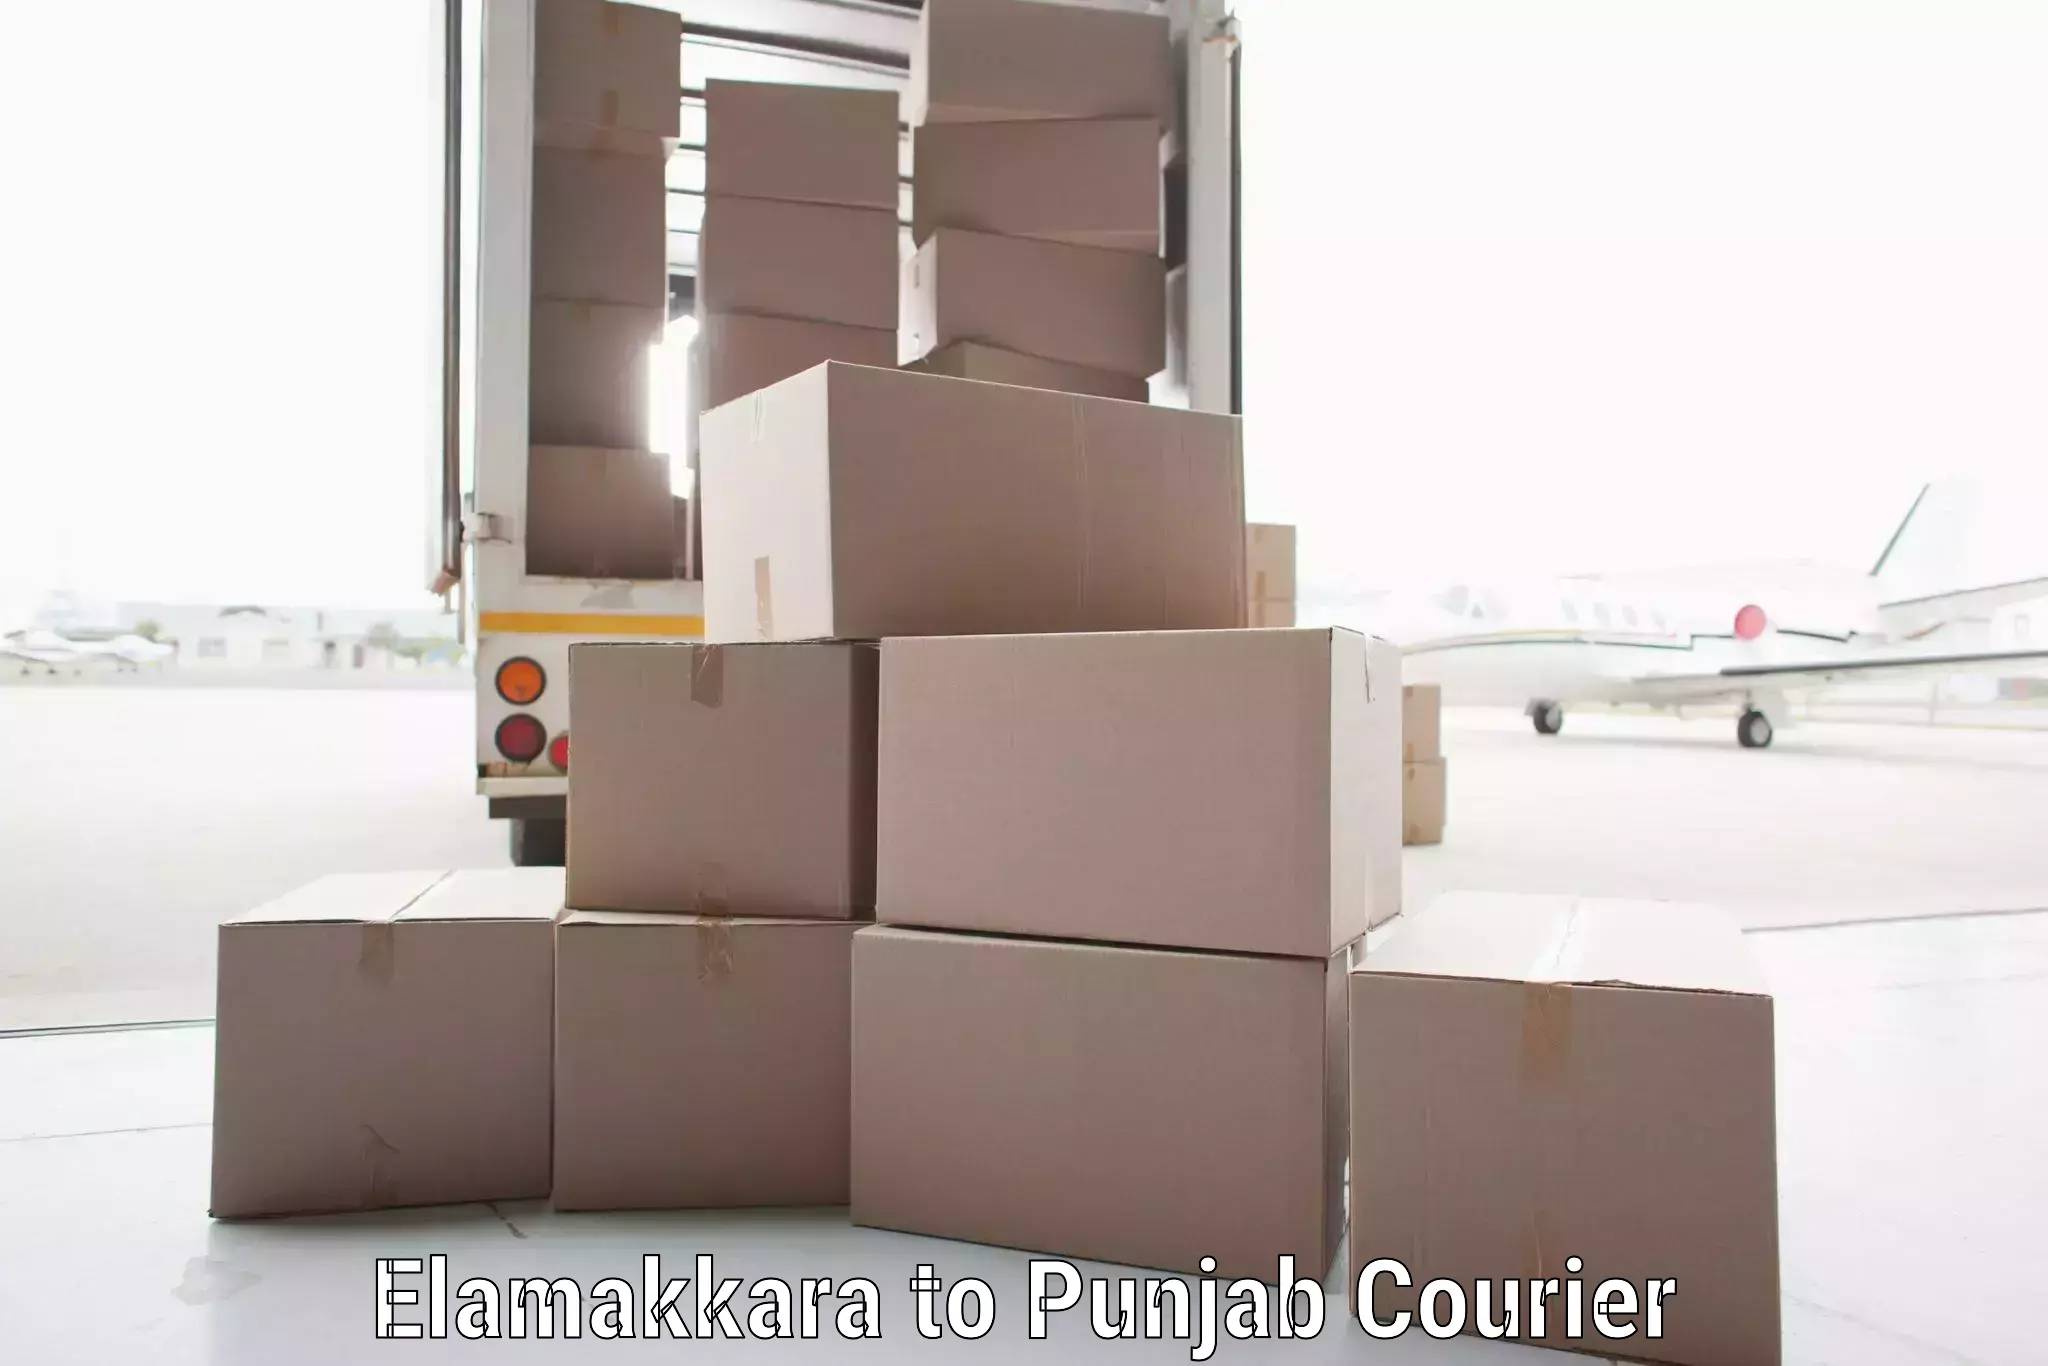 Efficient logistics management in Elamakkara to Dhilwan